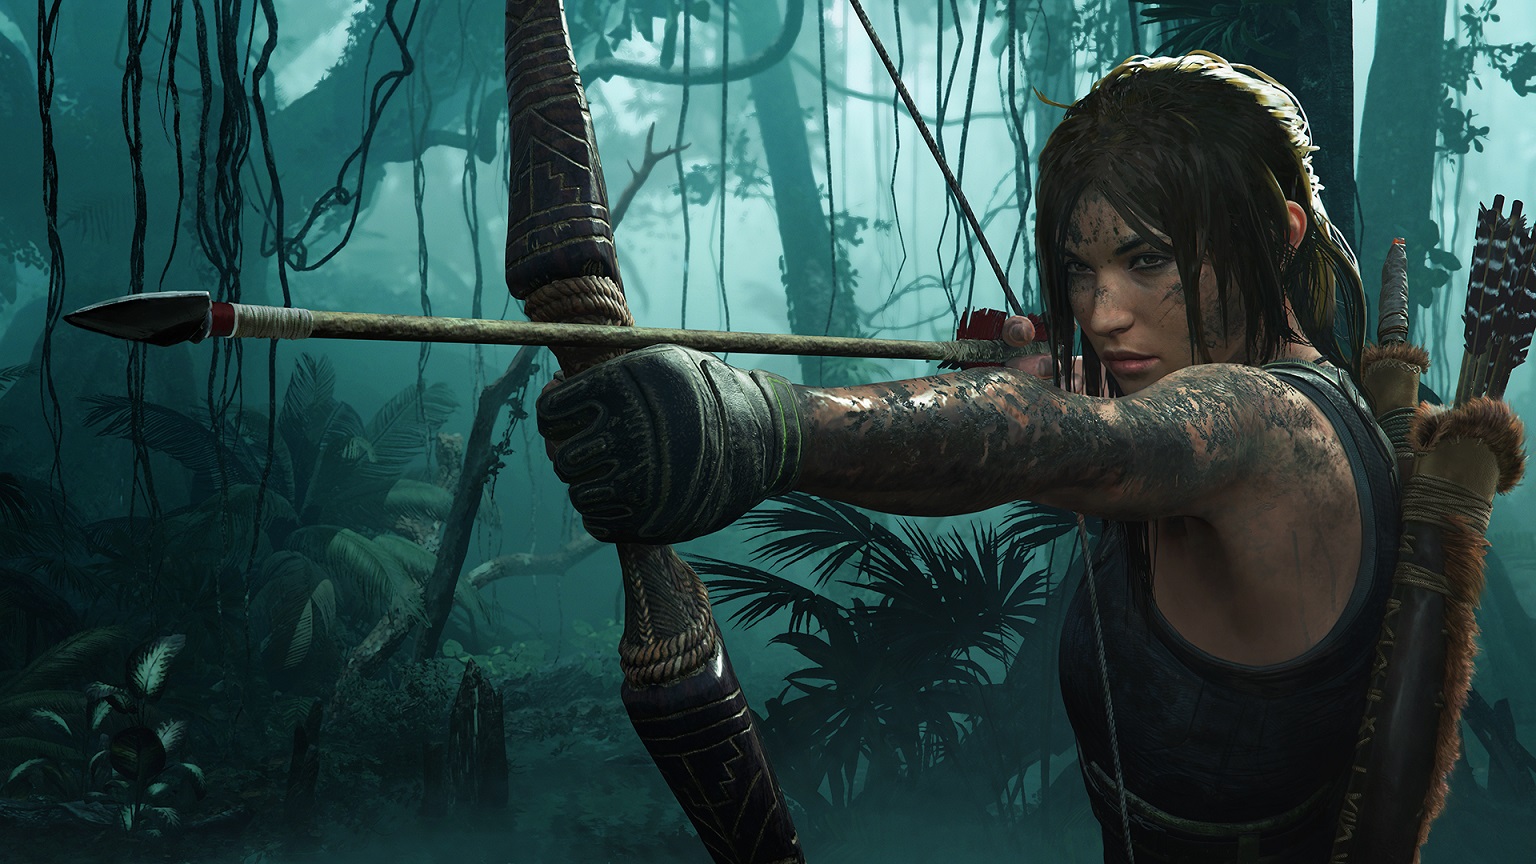 Shadow of the Tomb Raider está recebendo uma chuva de reviews negativos após promoção no Steam